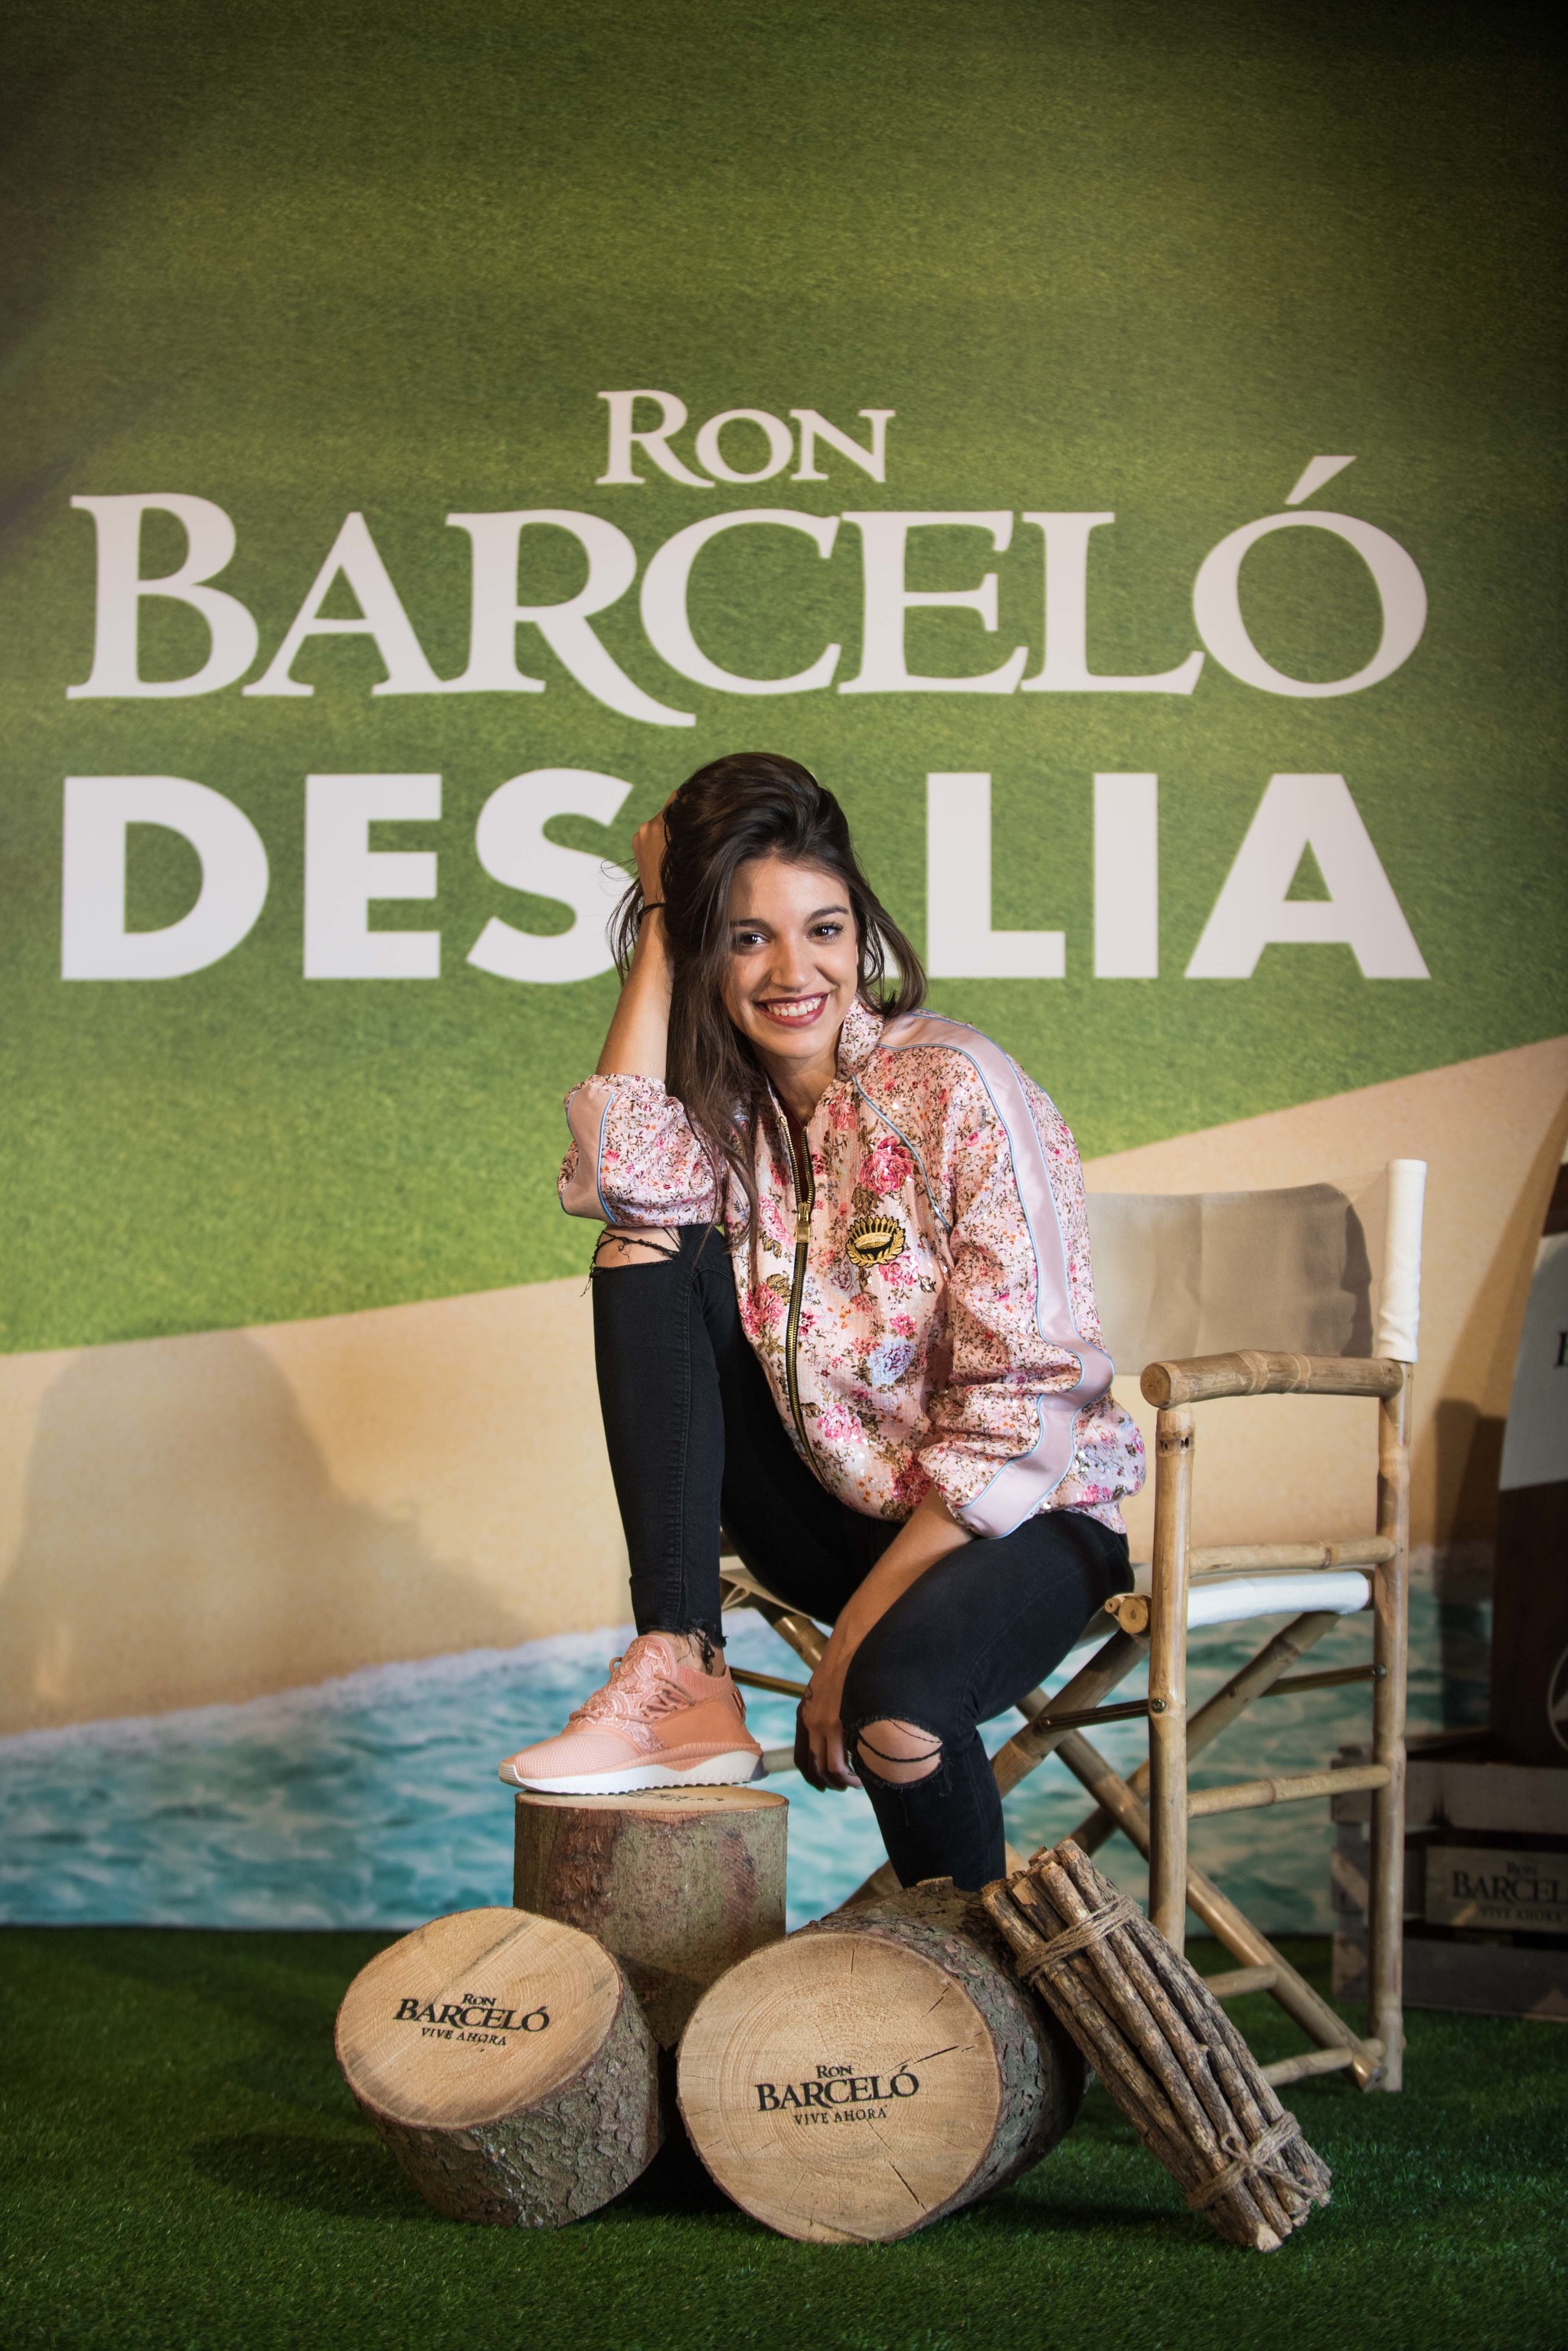 Ana Guerra en Desalia Ron Barcel 2018.